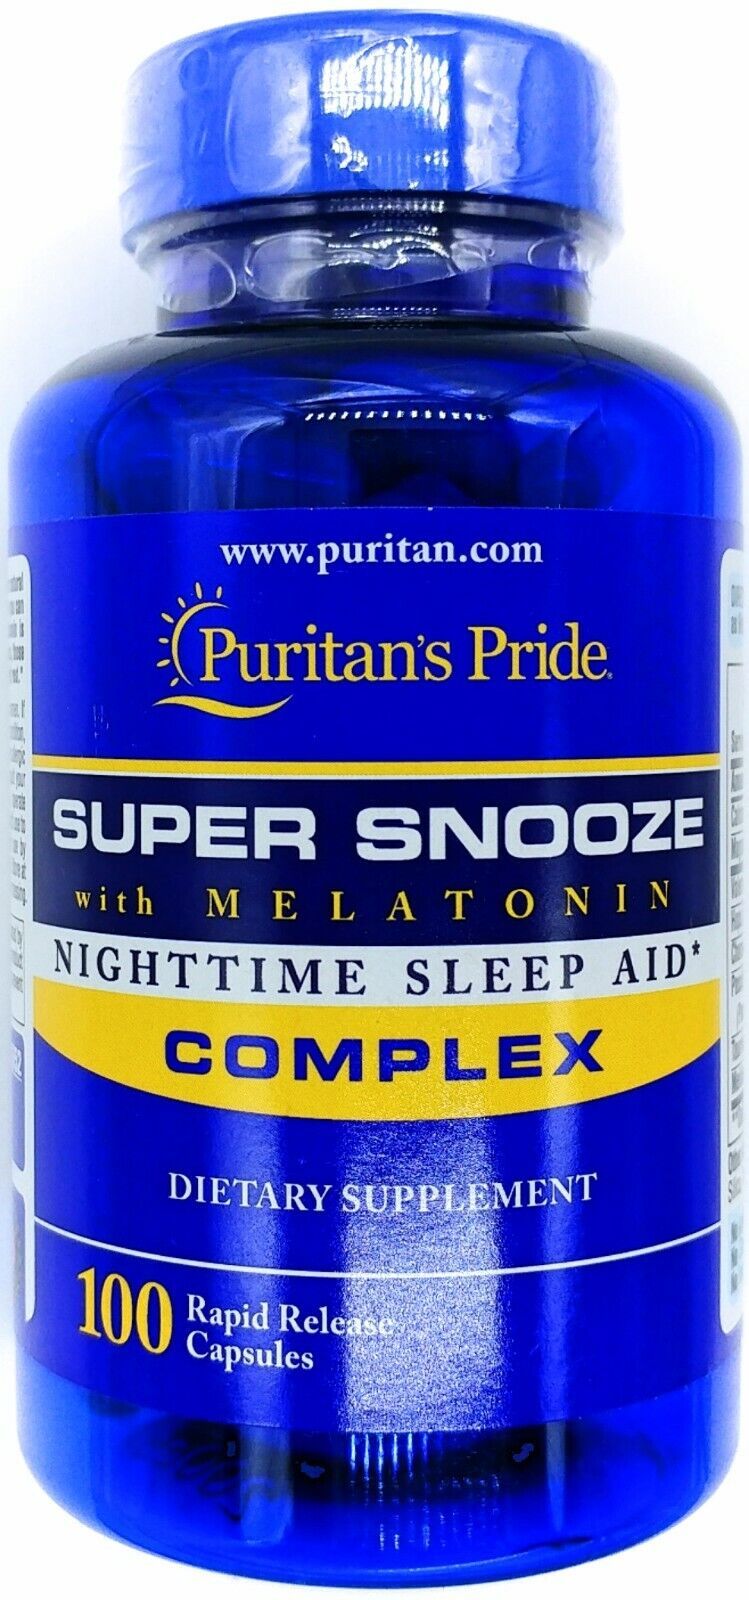 Super Snooze Complex Sleep Aid 100 Capsules 5mg Melatonin Valerian Chamomile +